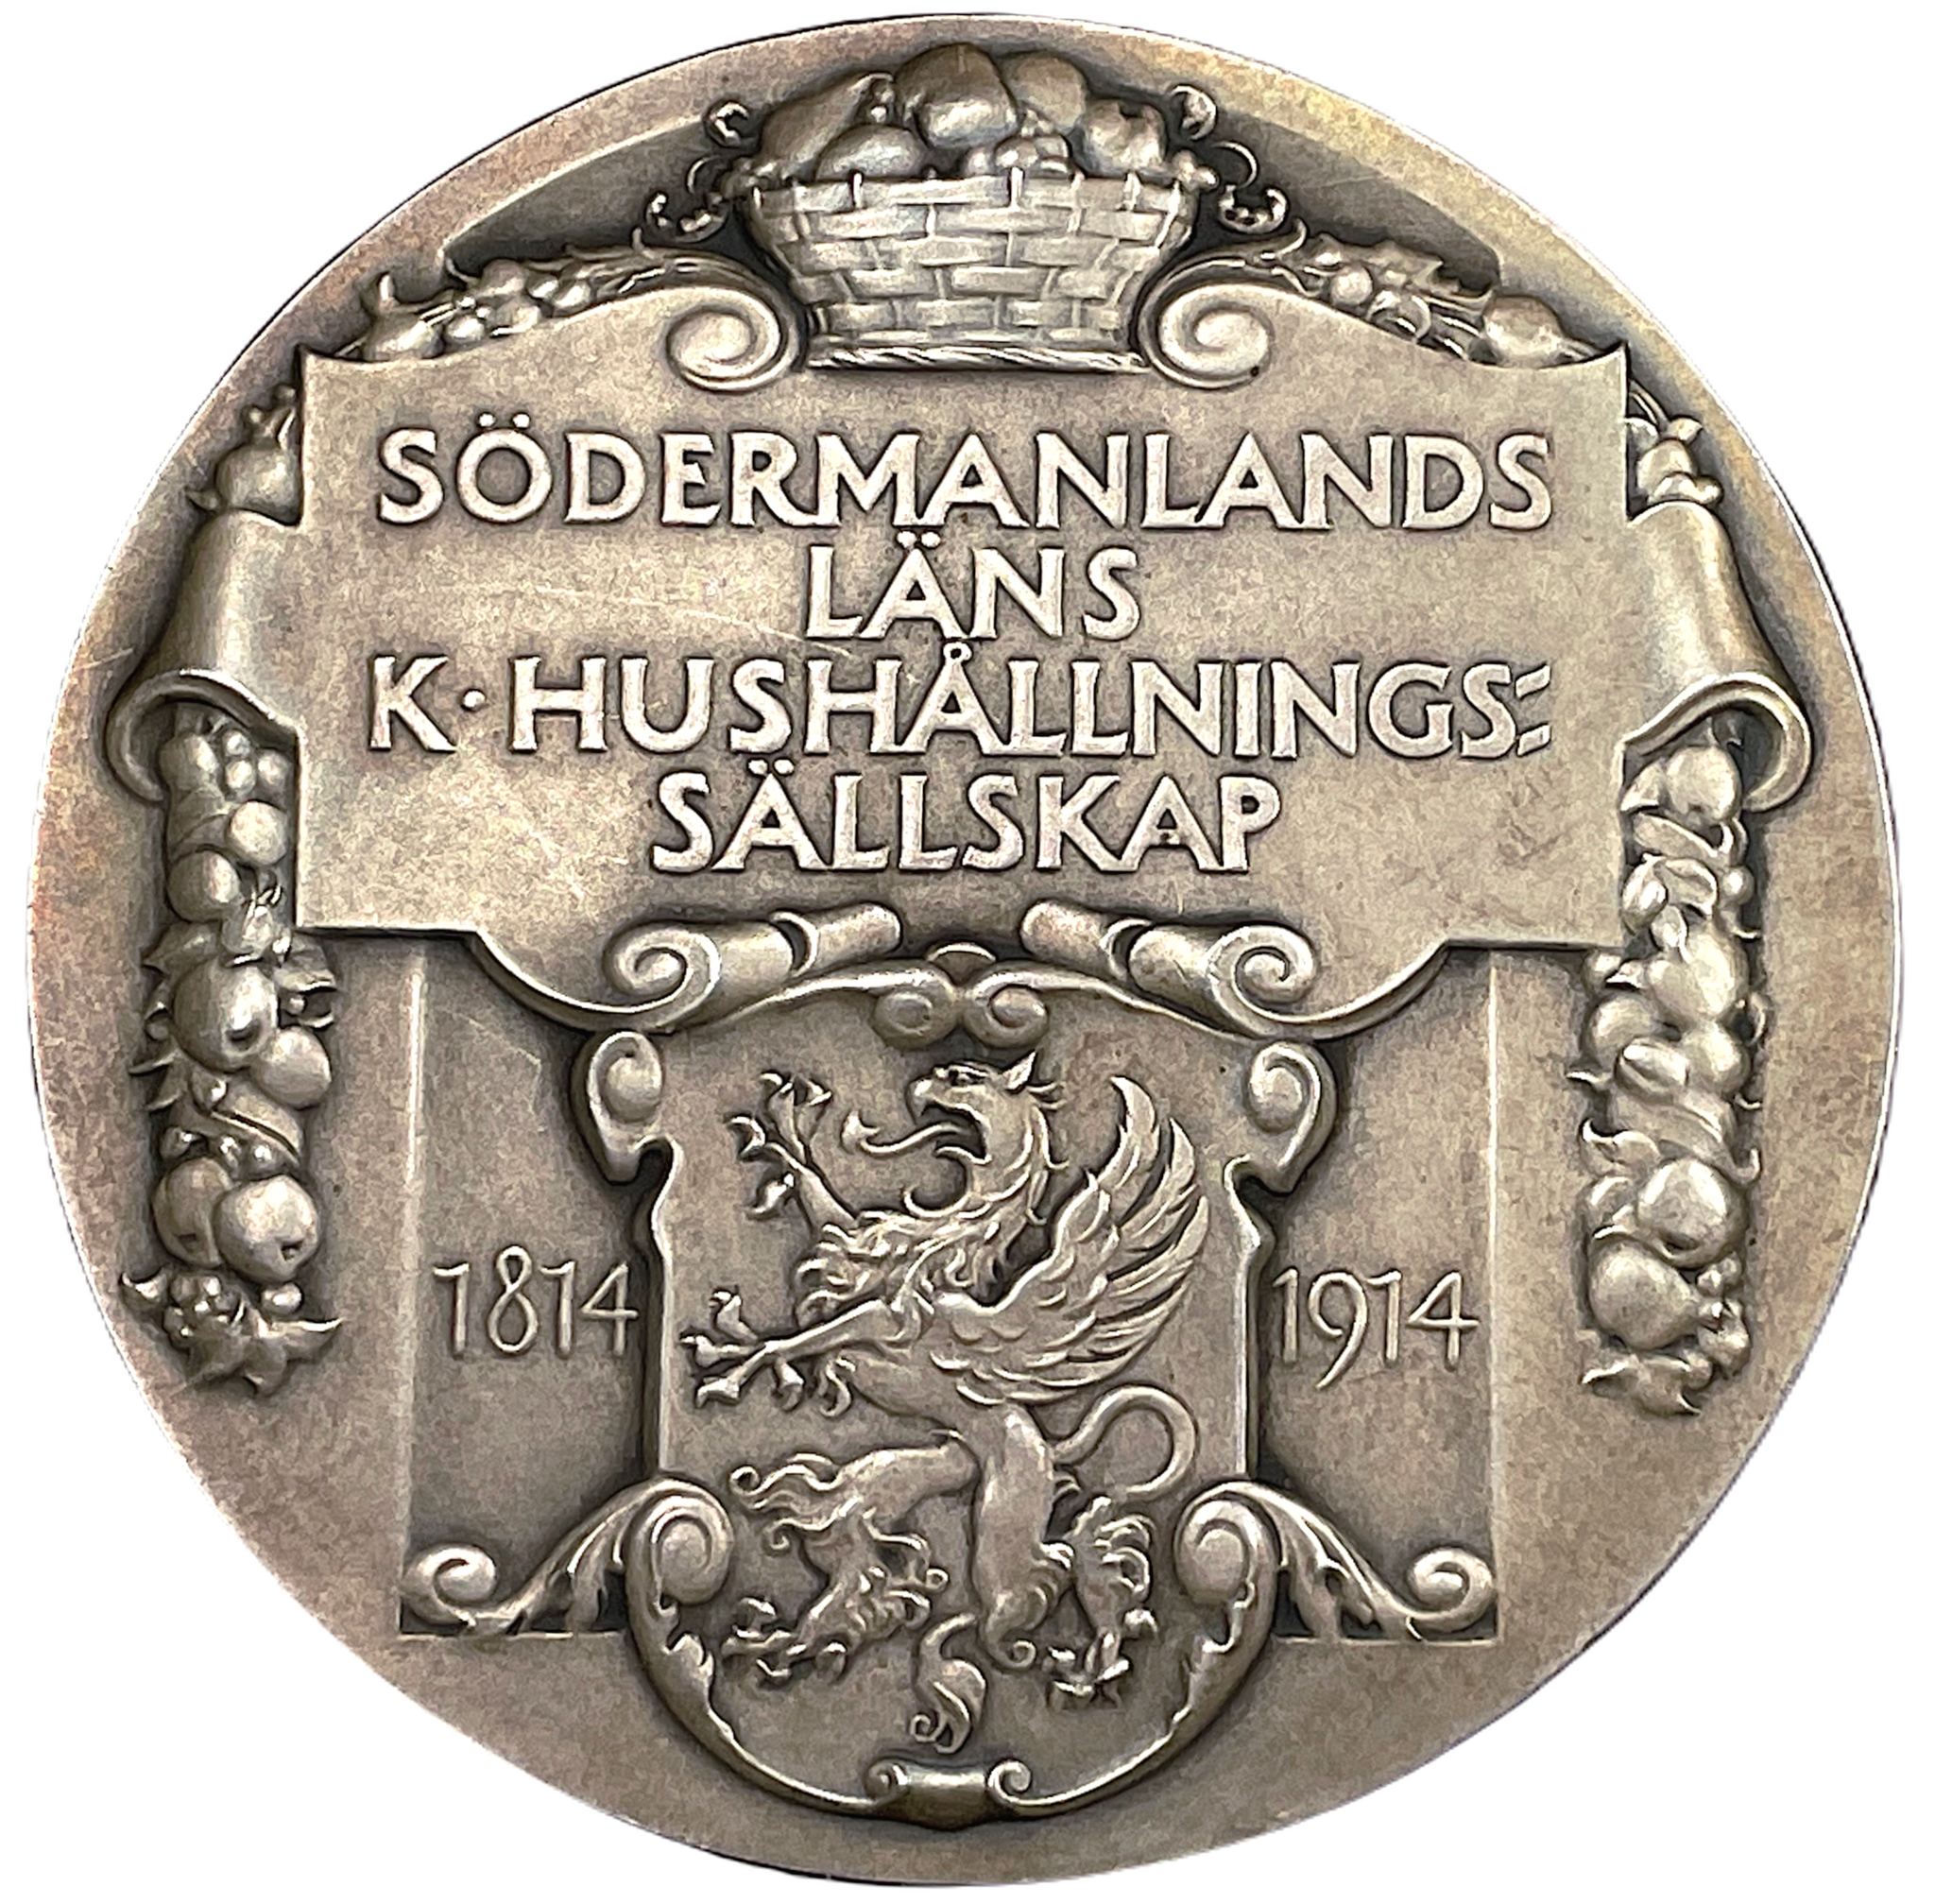 Södermanlands läns kungliga hushållningssällskap av Erik Lindberg 1914 i vacker Jugendstil - Respektera och värdesätt arvet